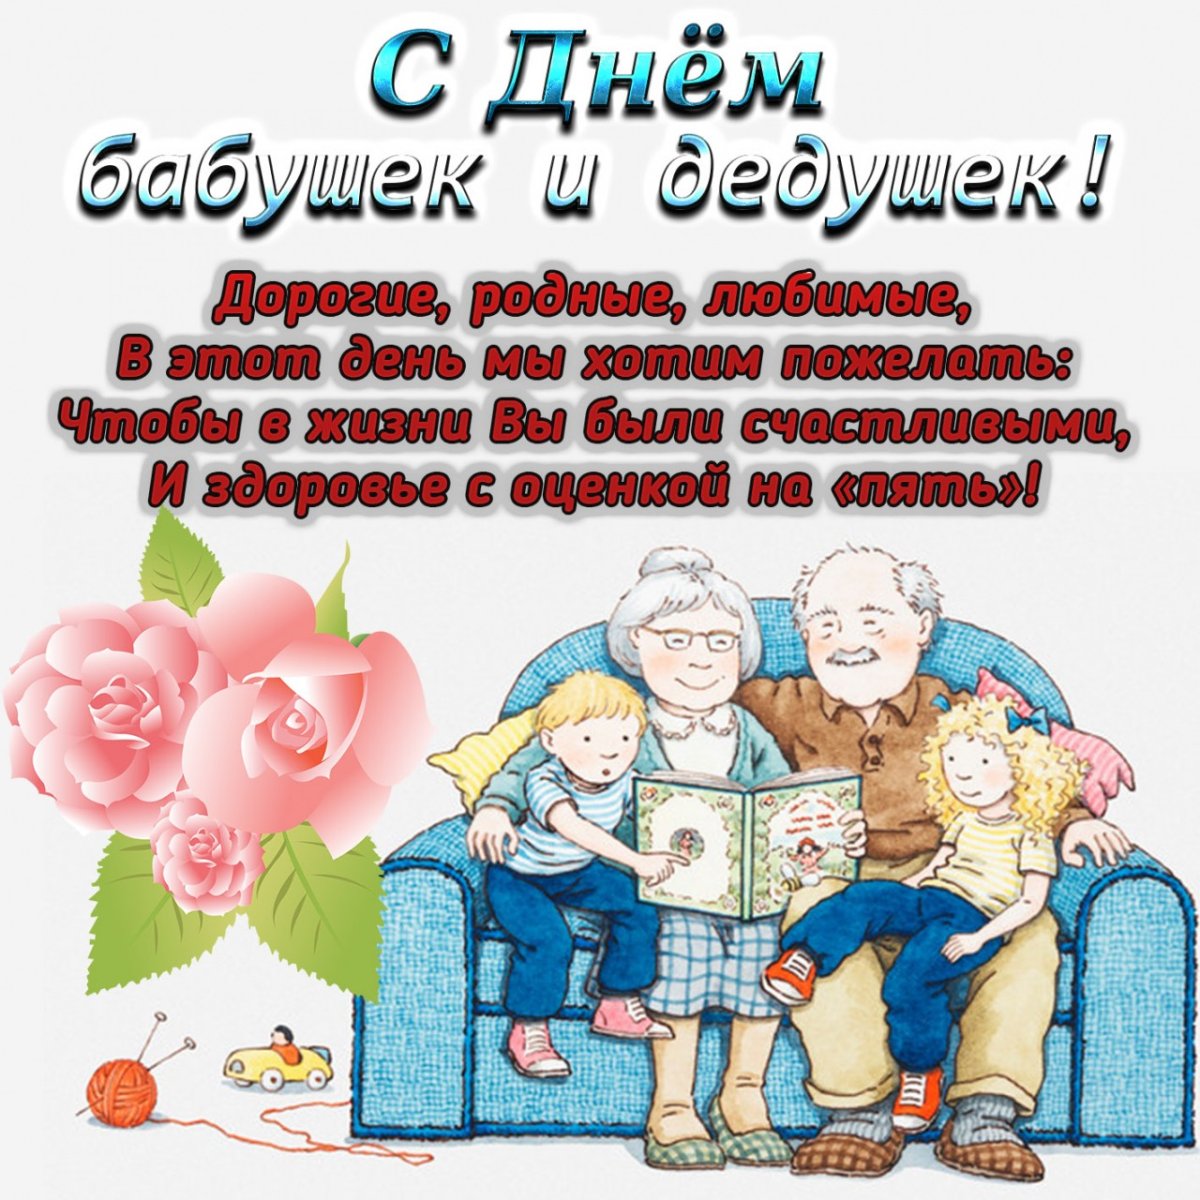 28 октября в России отмечают День бабушек и дедушек, достойно дополняющий череду семейных праздников..